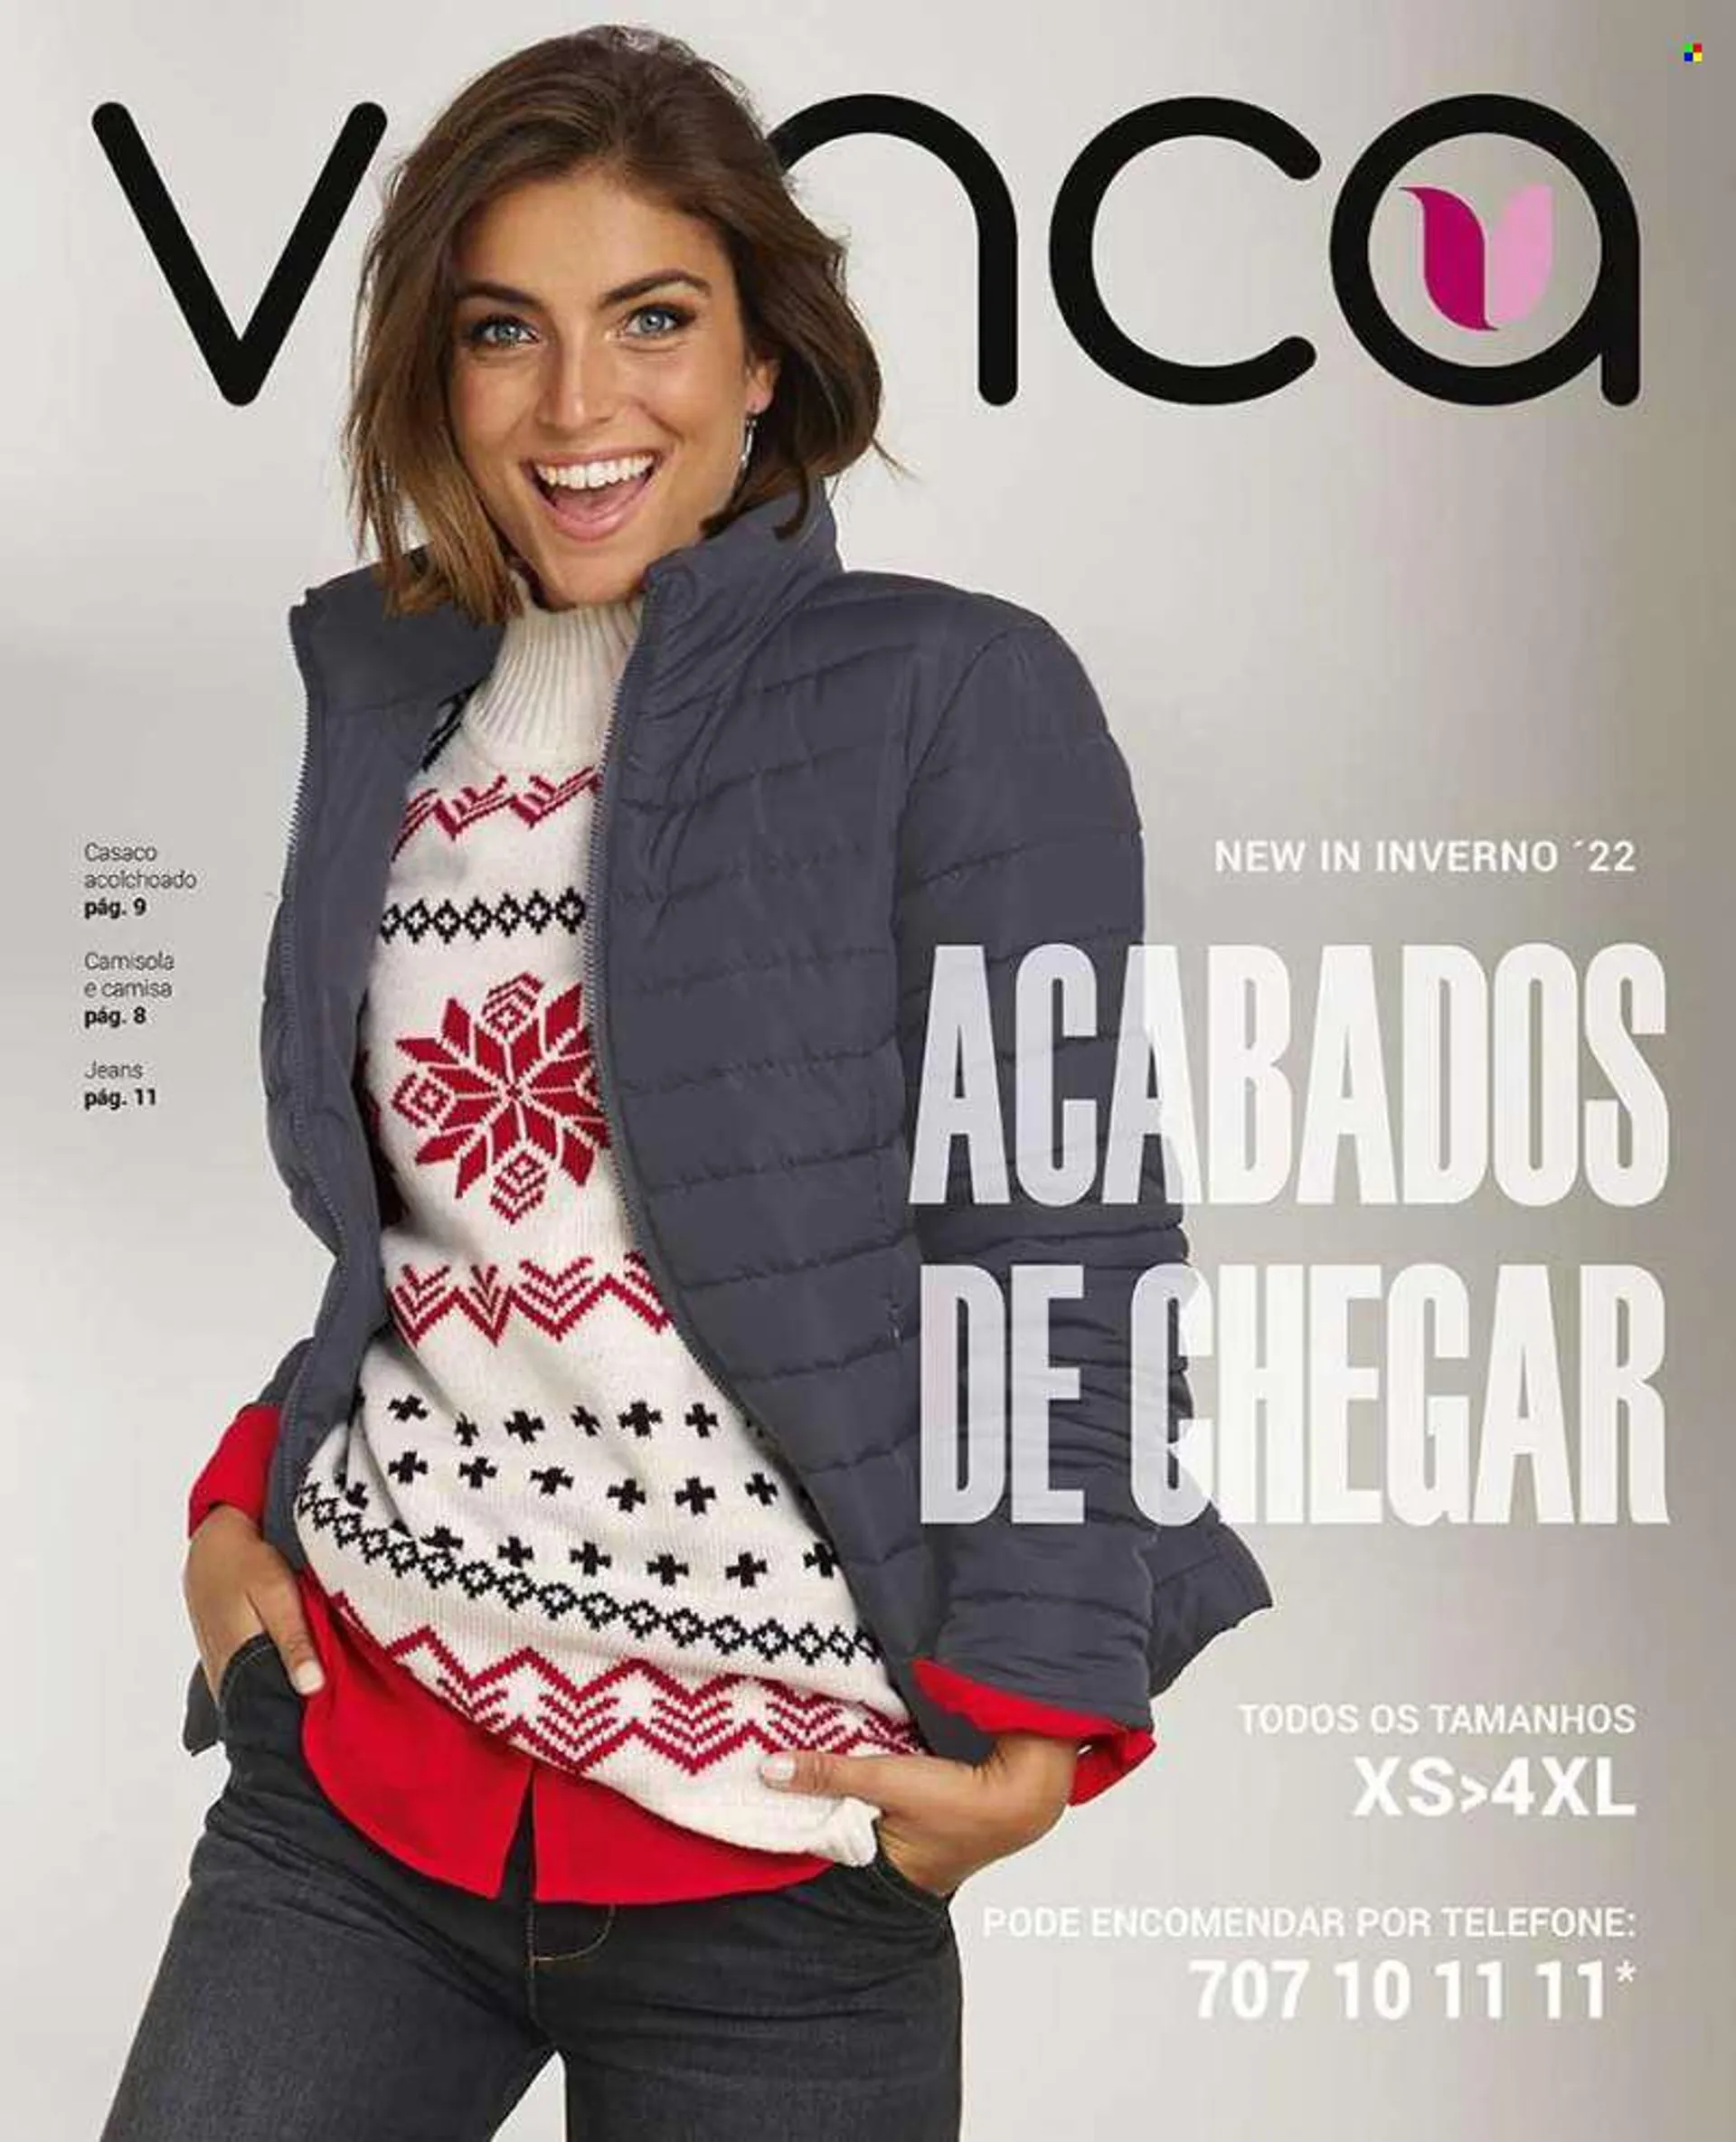 Folheto Venca - Produtos em promoção - casaco, jeans, camisa, camisola. Página 1.